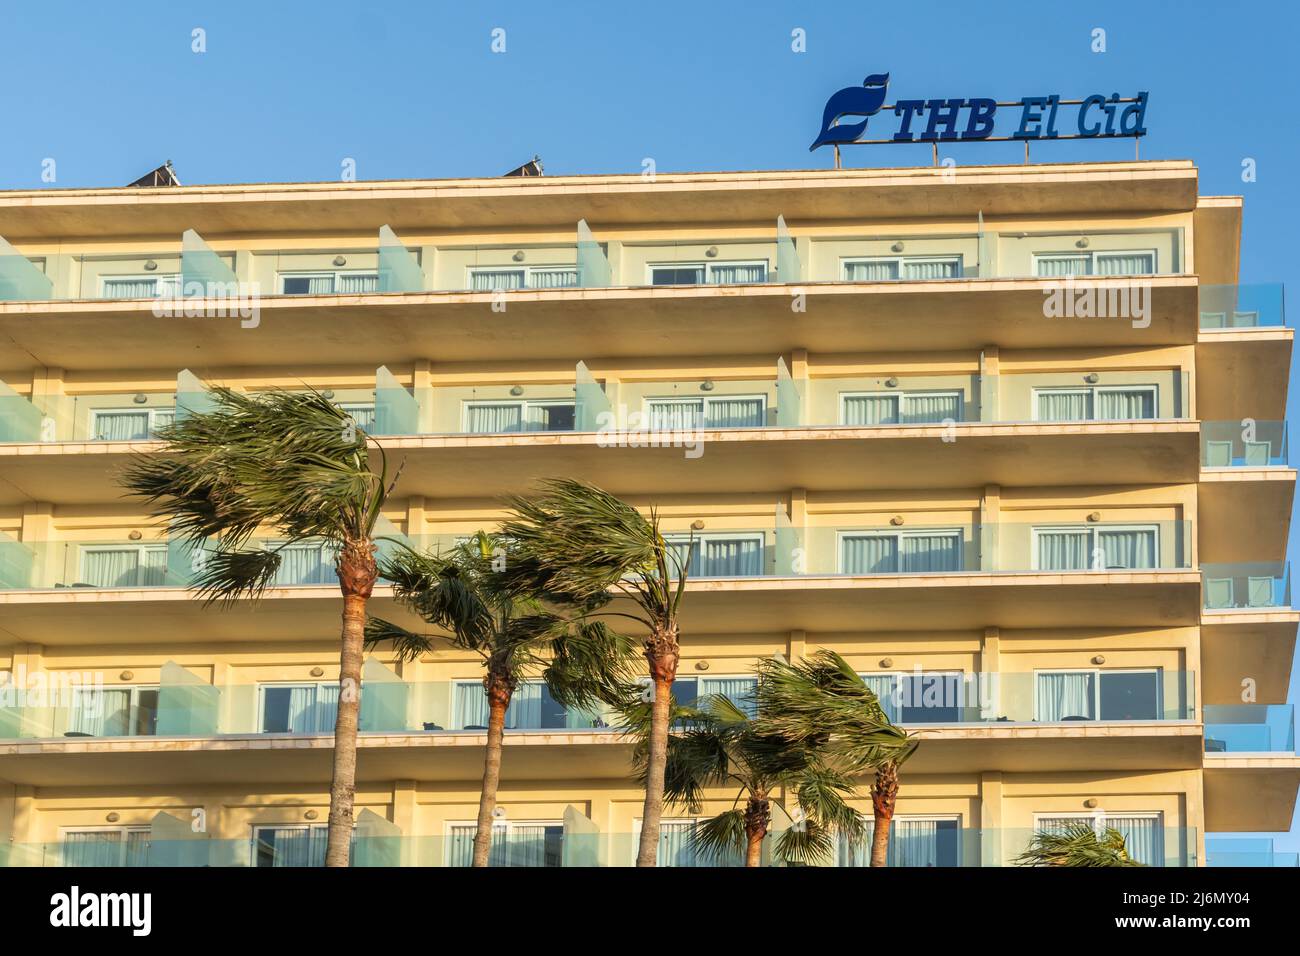 Playa de Palma, Spagna; aprile 23 2022: Facciata principale dell'hotel THB El Cid, situato nella località turistica di Playa de Palma de Mallorca, al tramonto. Centro benessere Foto Stock